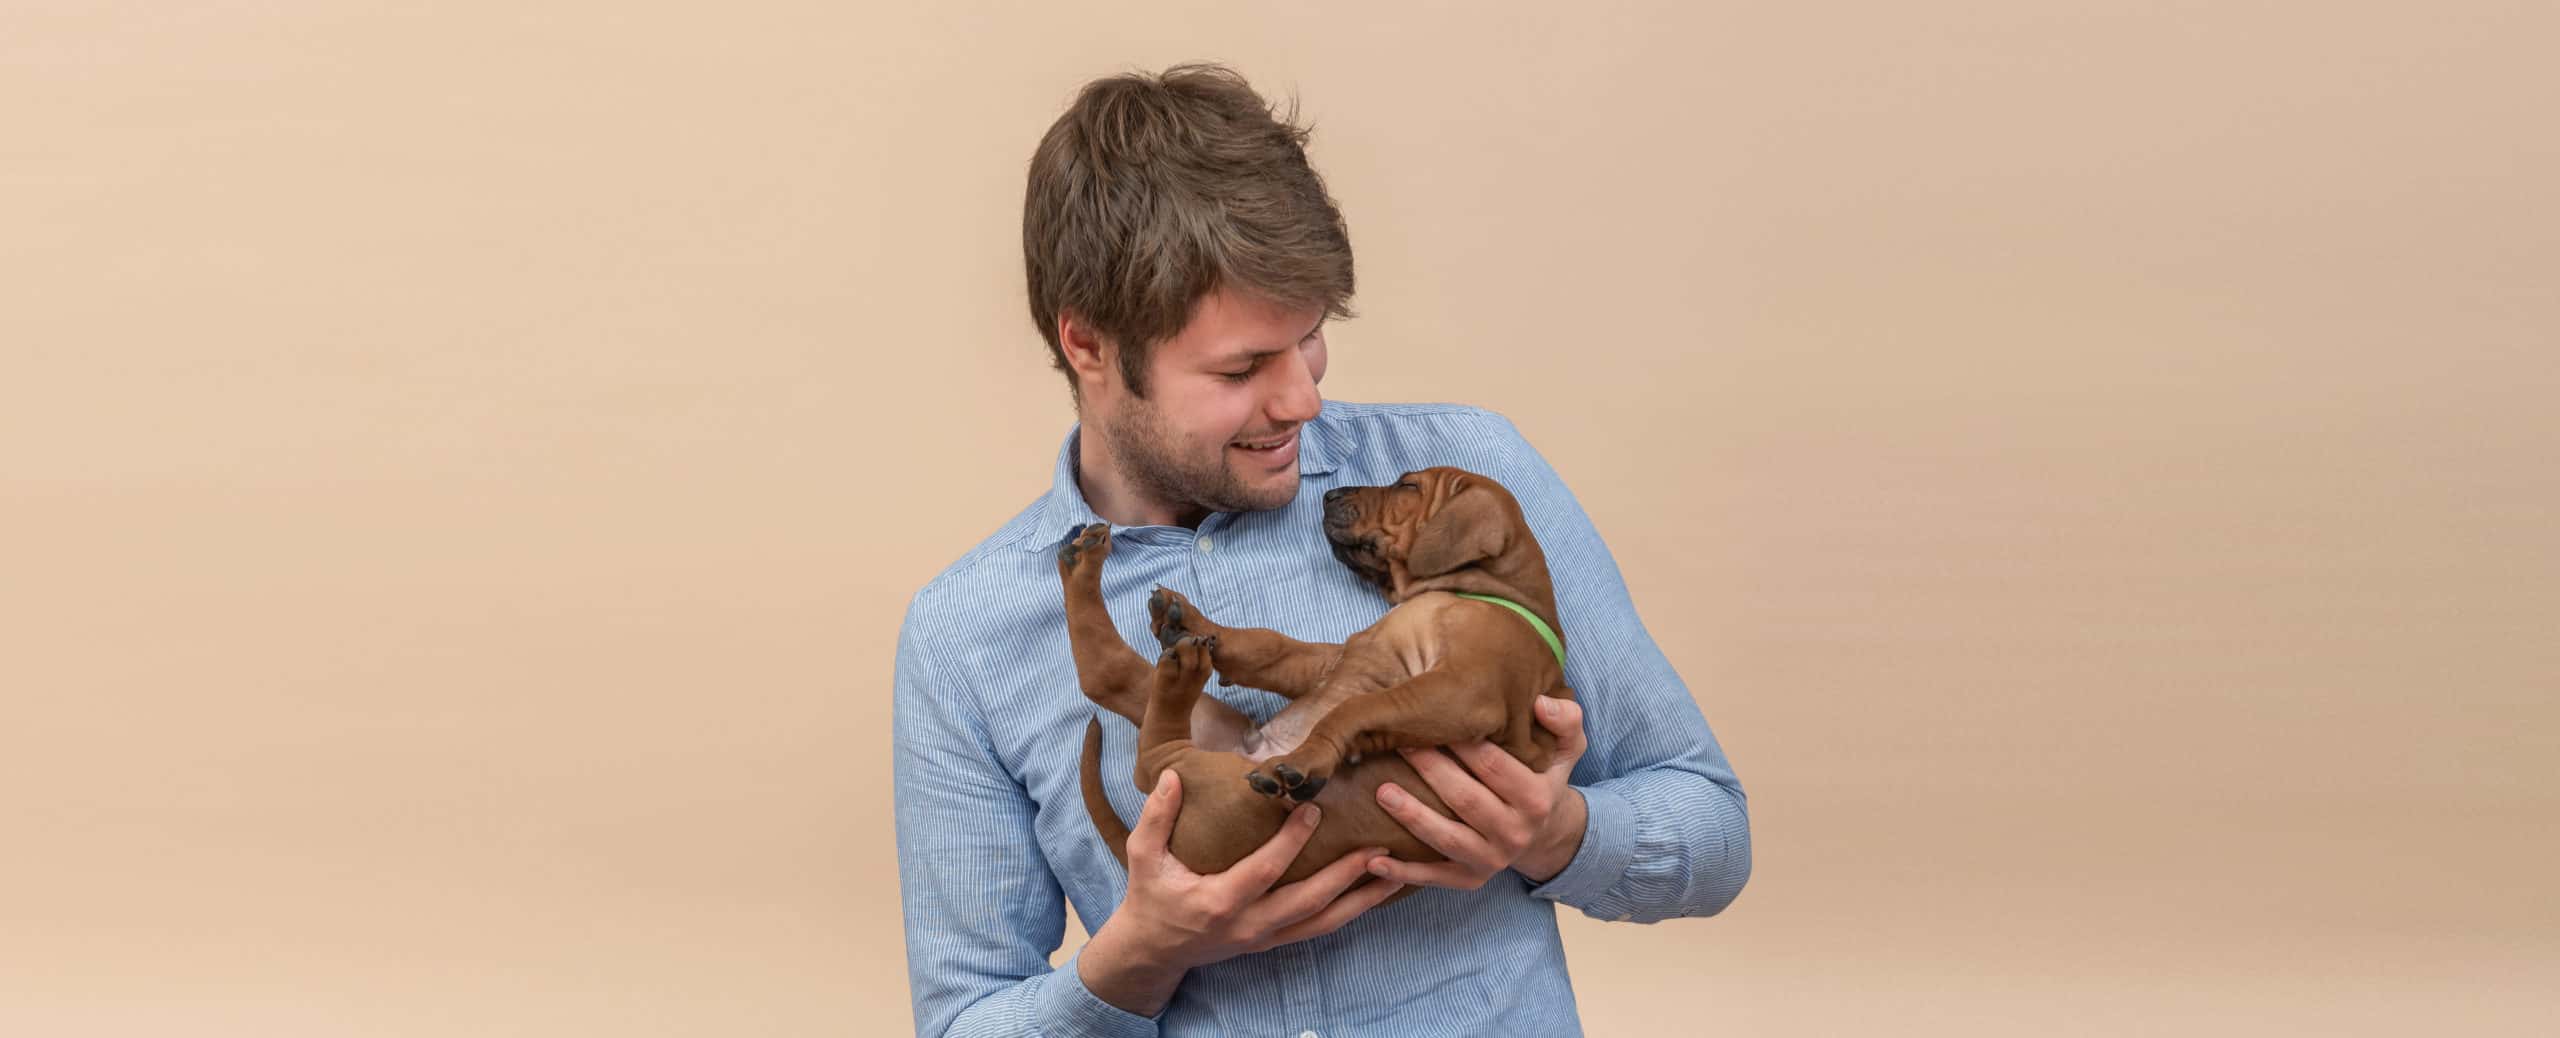 Oprichter hondenvoeding BuddyBites met pup in de armen